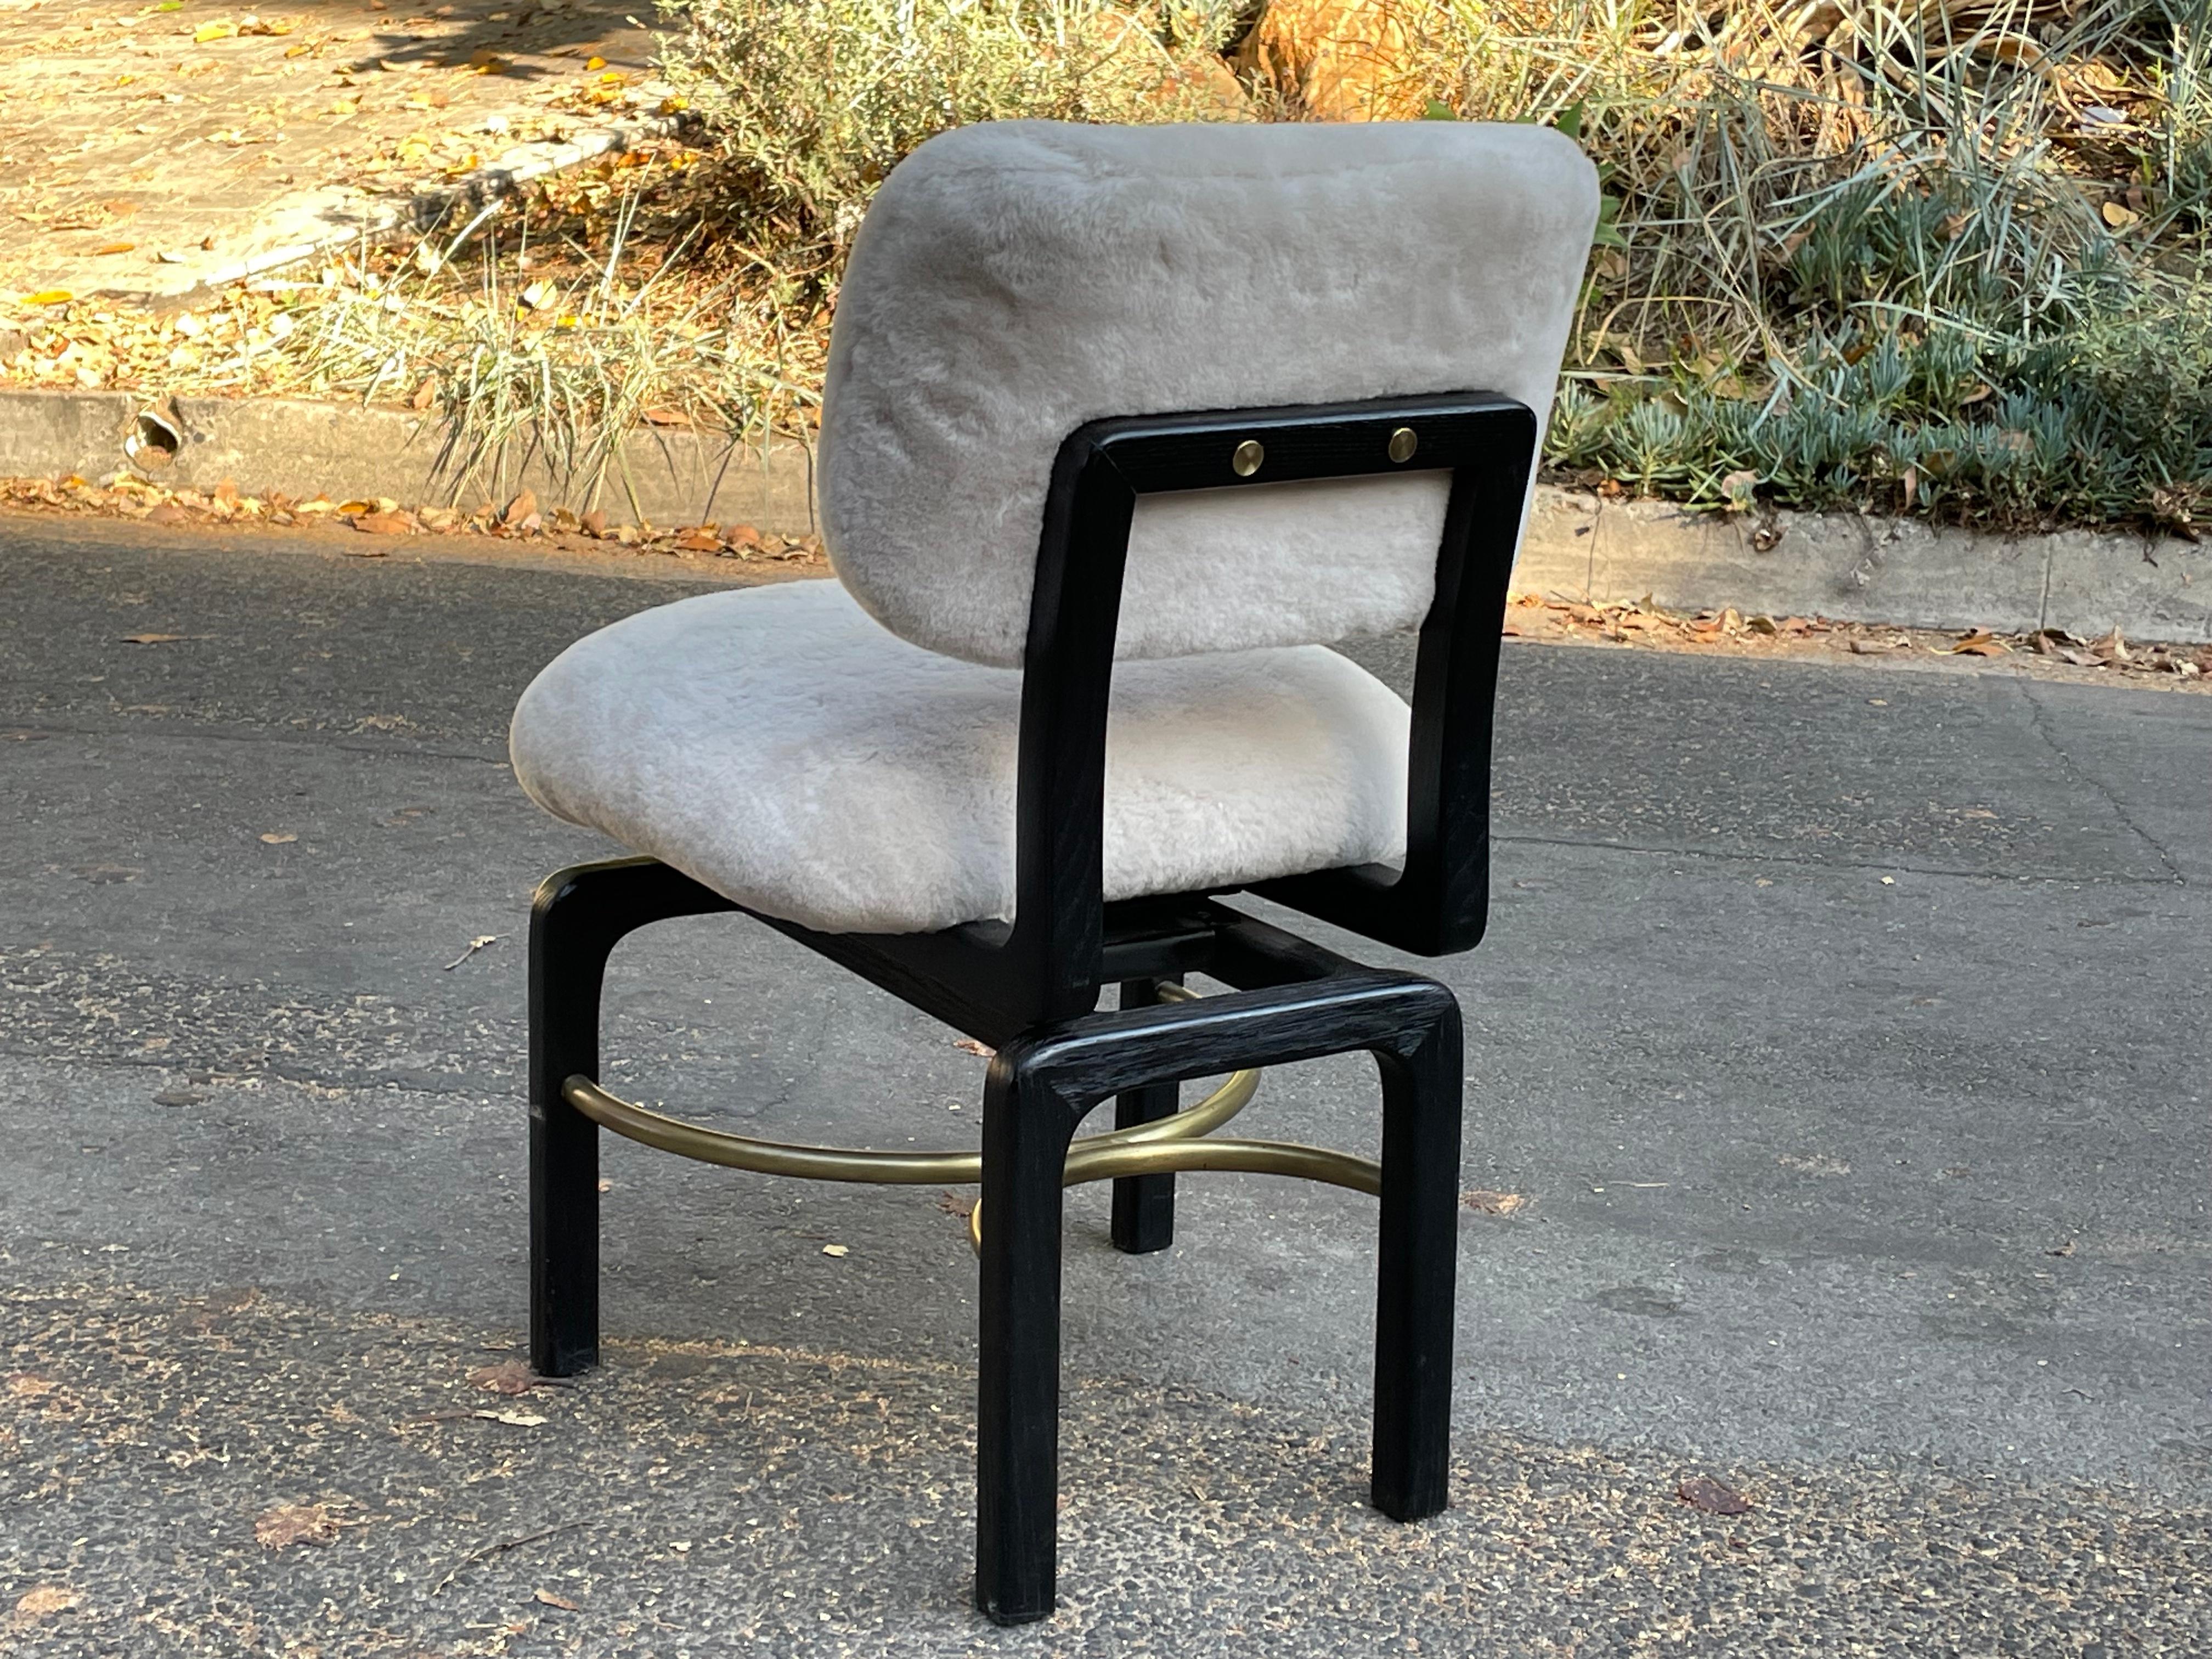 Superbe chaise d'appoint pivotante conçue sur mesure par Thomas/One Studio et recouverte de shearling sur l'assise et le dossier. Magnifique cadre en bois massif noir avec brancards en laiton.

Les lignes de cette chaise sont superbes.

Excellent